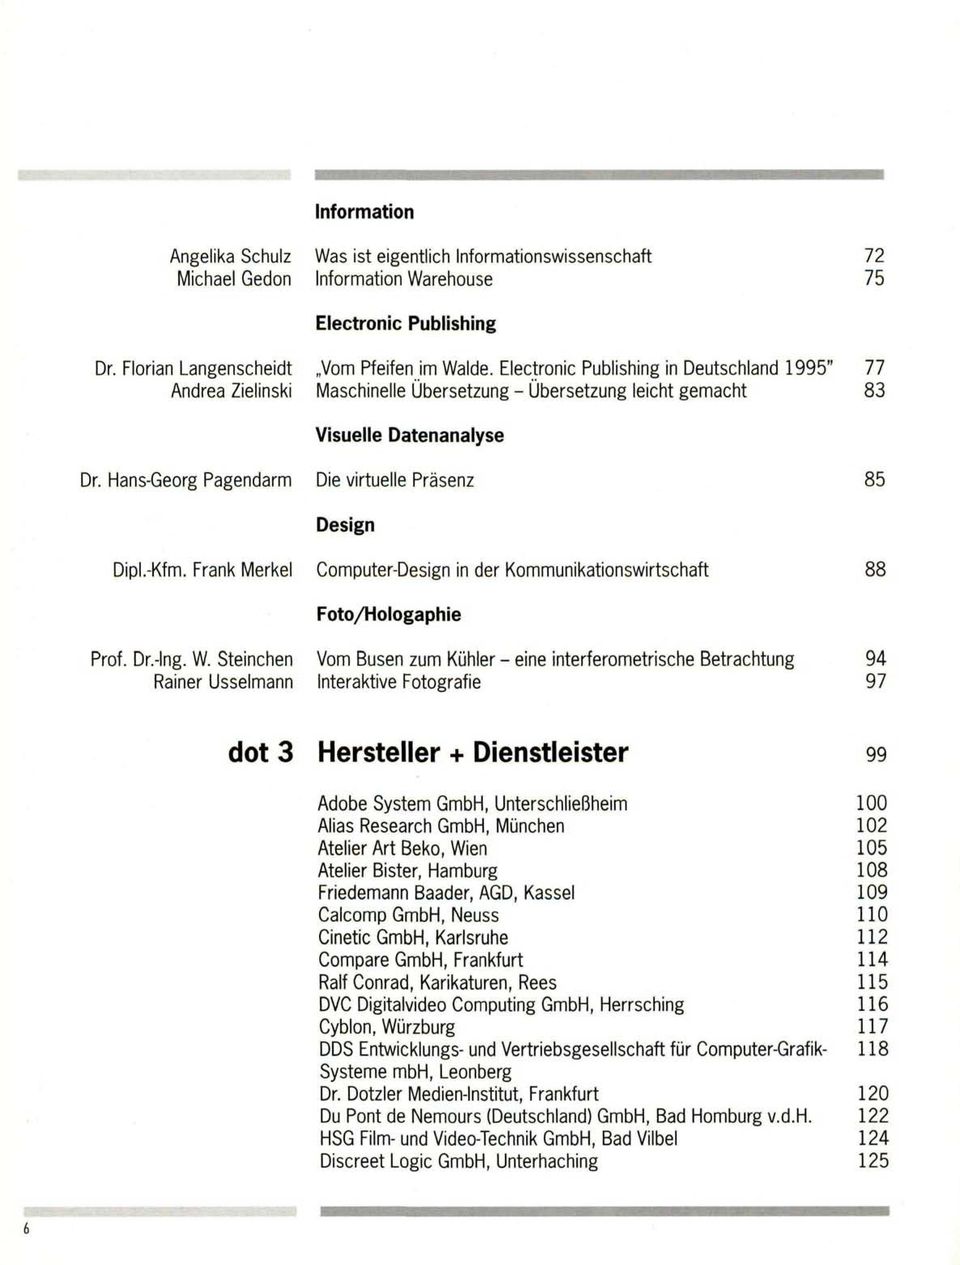 Electronic Publishing in Deutschland 1995" Maschinelle Übersetzung - Übersetzung leicht gemacht Visuelle Datenanalyse Die virtuelle Präsenz Design Computer-Design in der Kommunikationswirtschaft